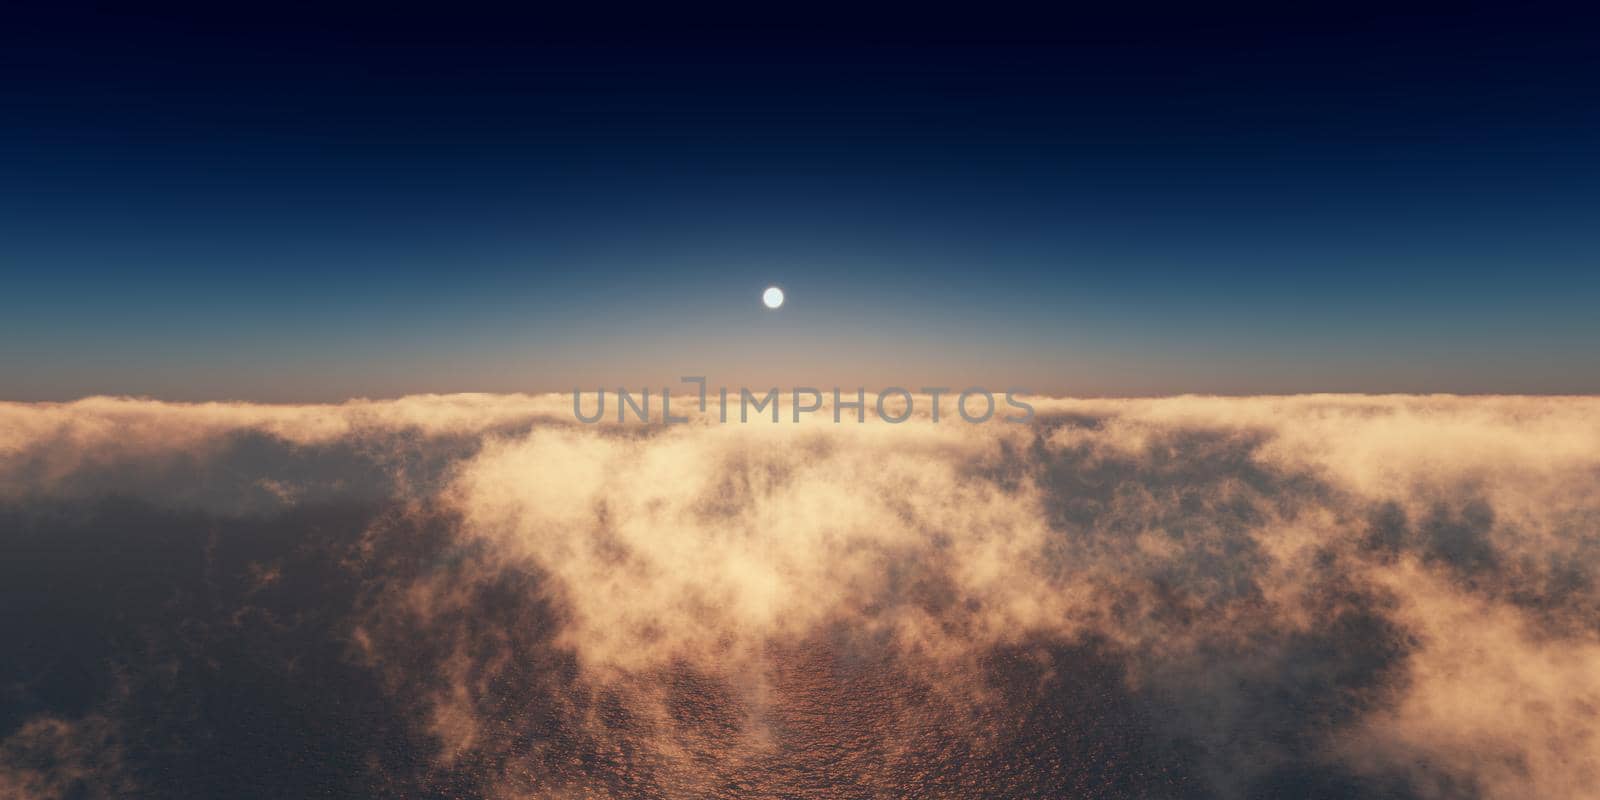 ocean sunset above clouds, 3d render illustration